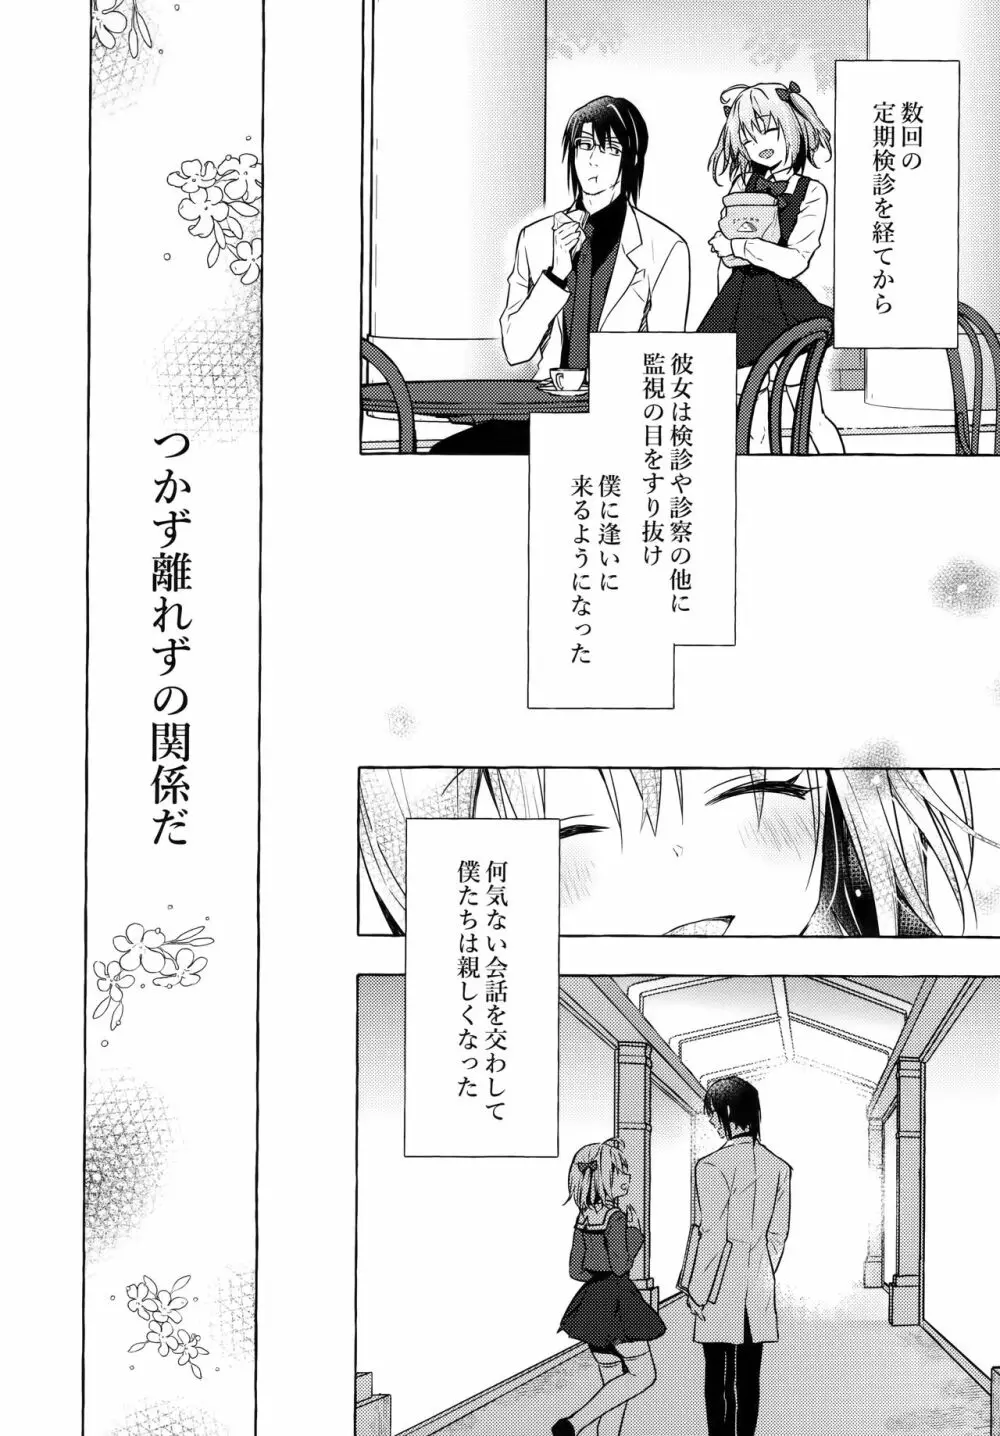 ニャンコロジ10 -宇佐美さんと秘密の研究生活- - page9